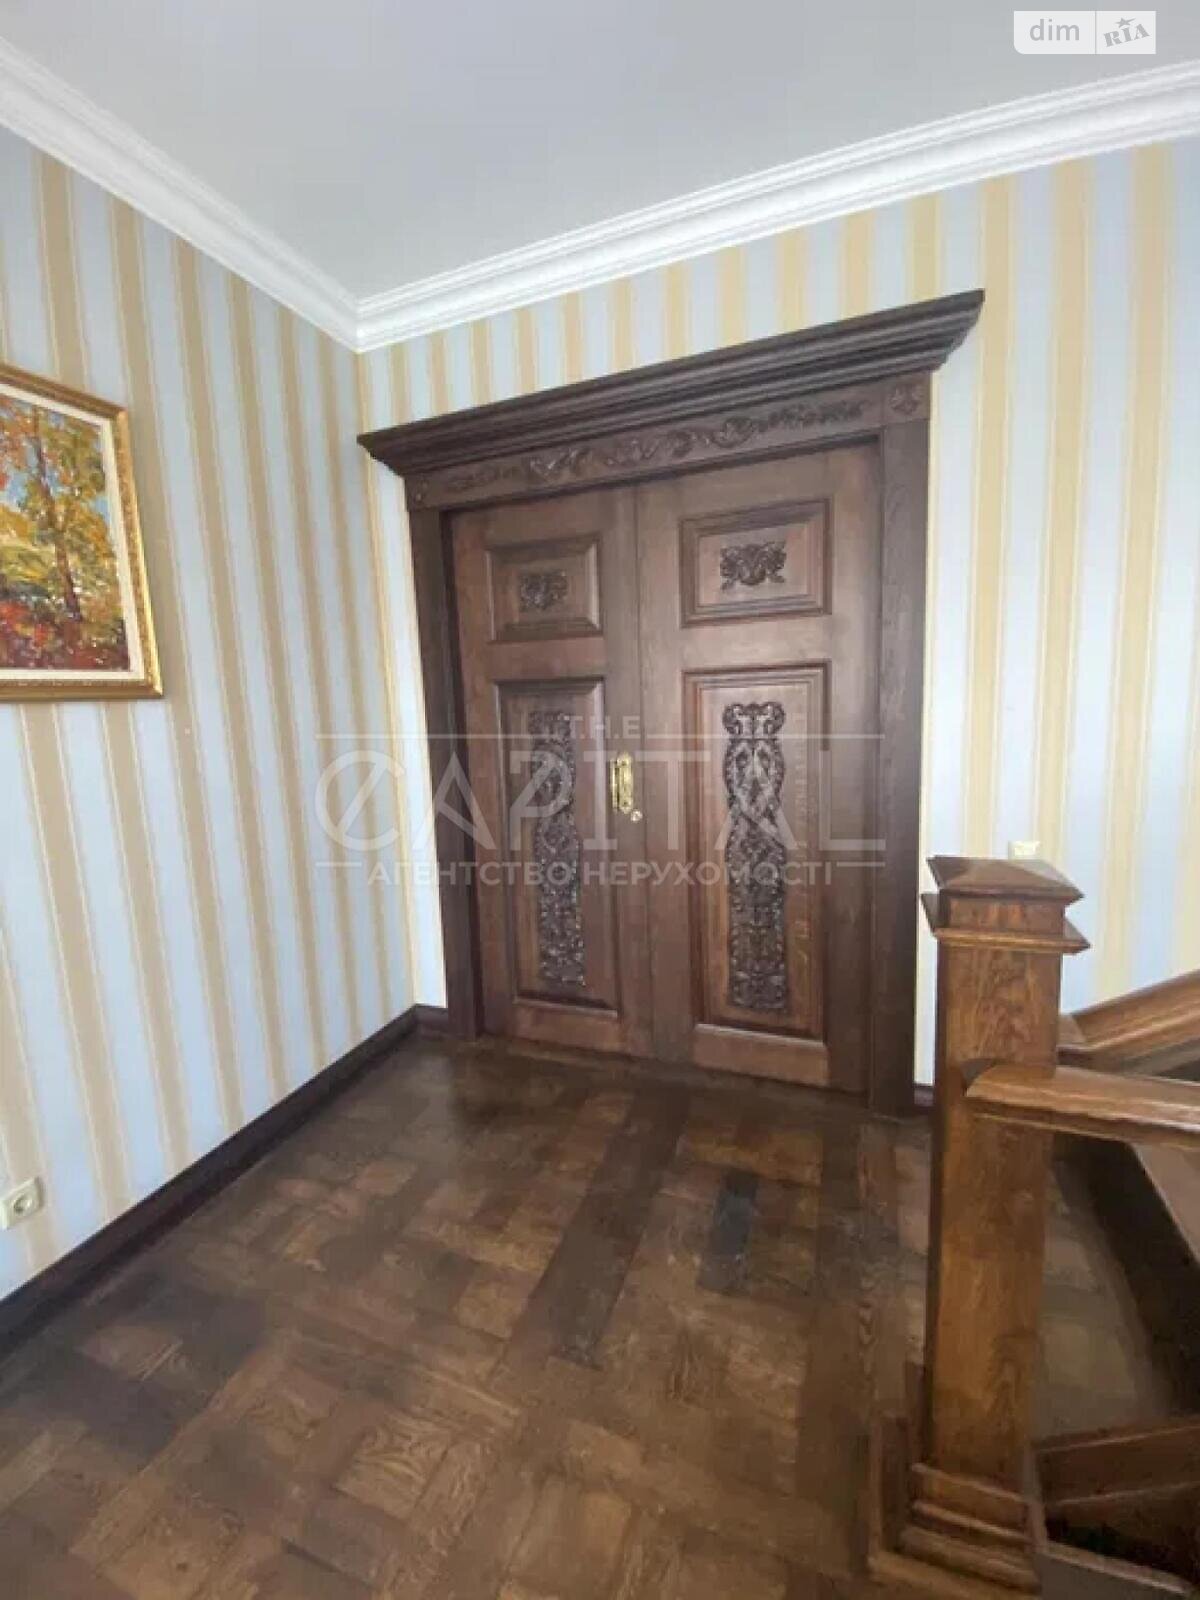 Аренда офисного помещения в Киеве, Жилянская улица, помещений - 4, этаж - 2 фото 1